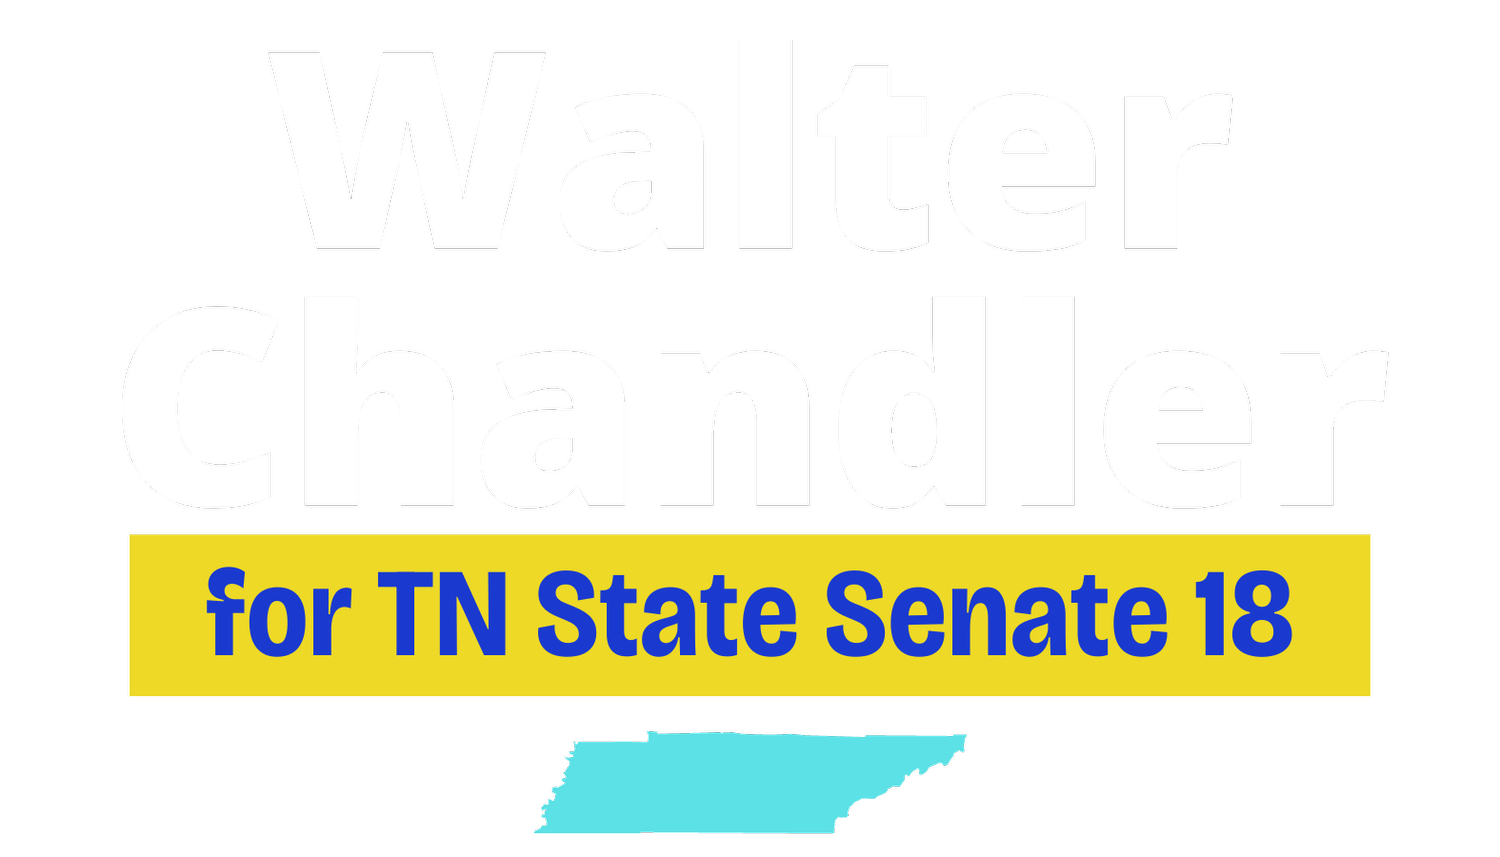 Walter Chandler for Senate